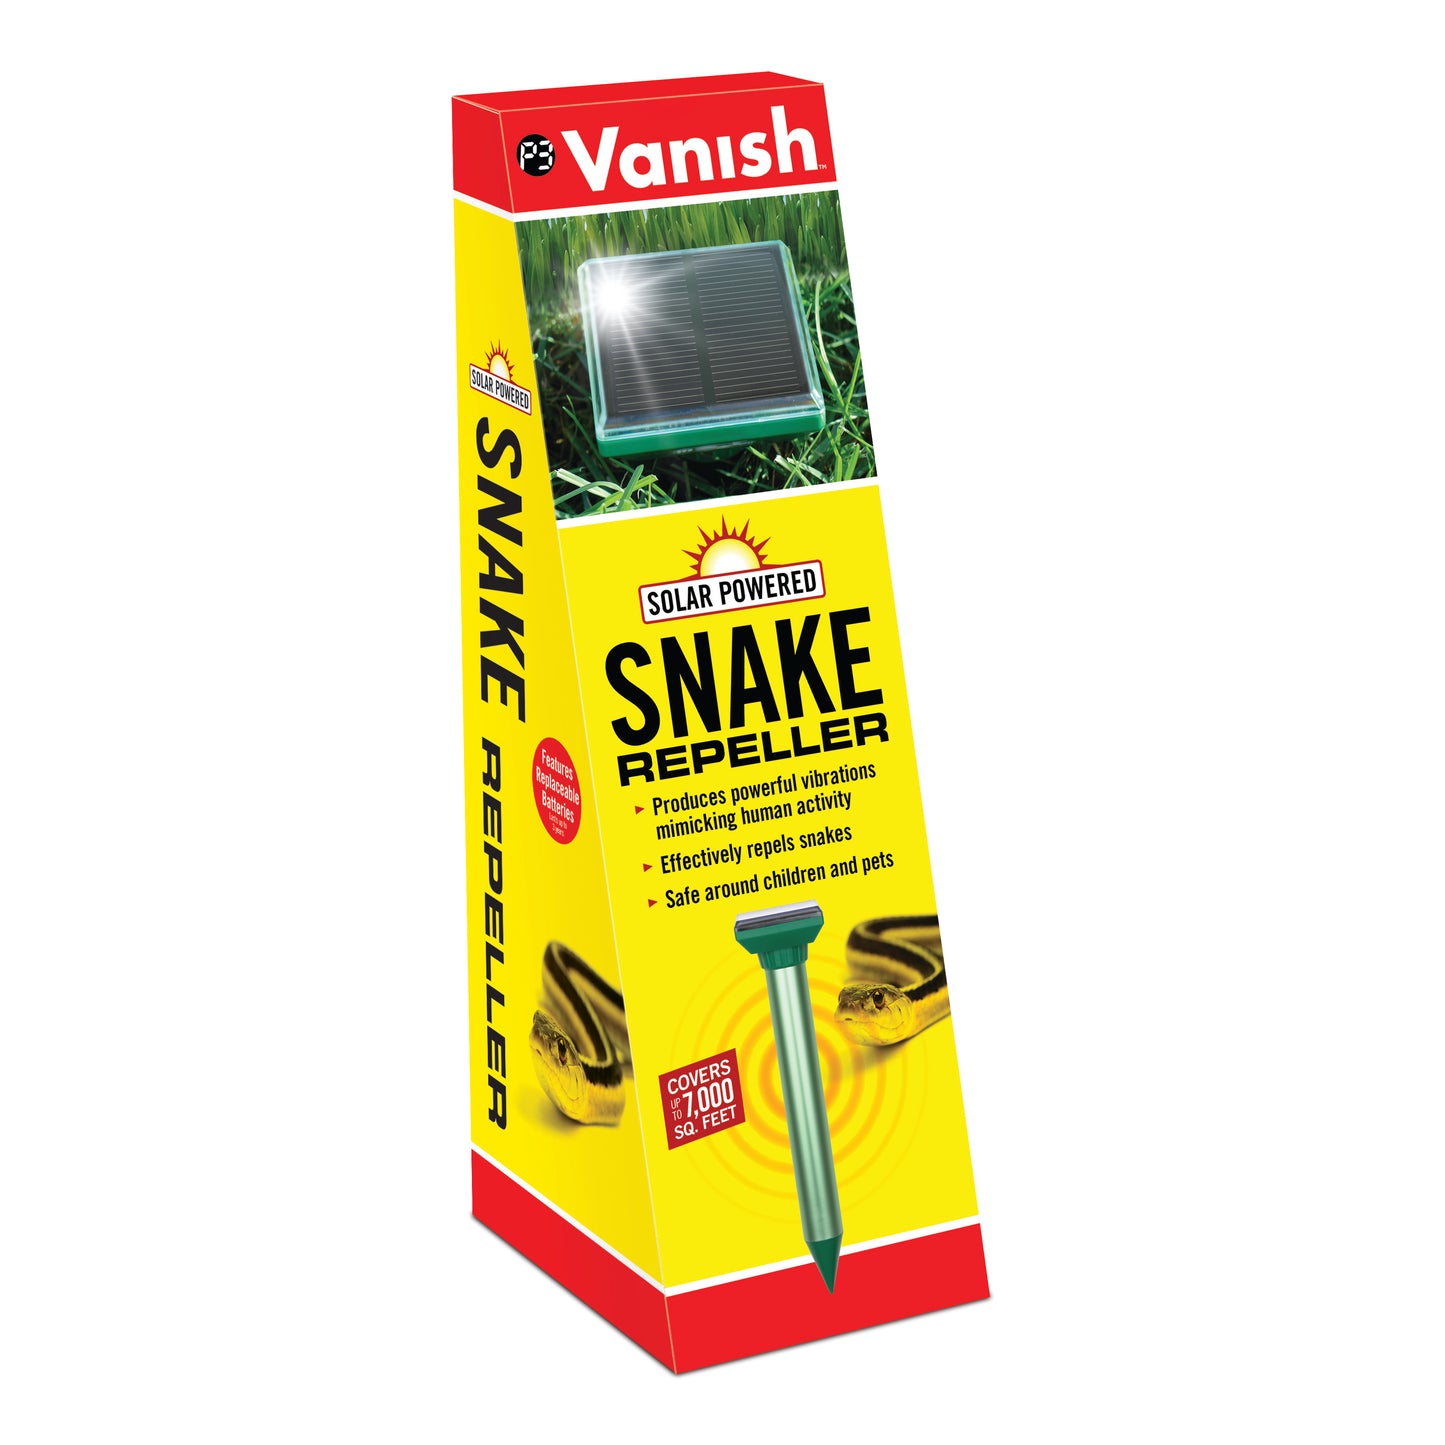 Vanish Snake Repeller